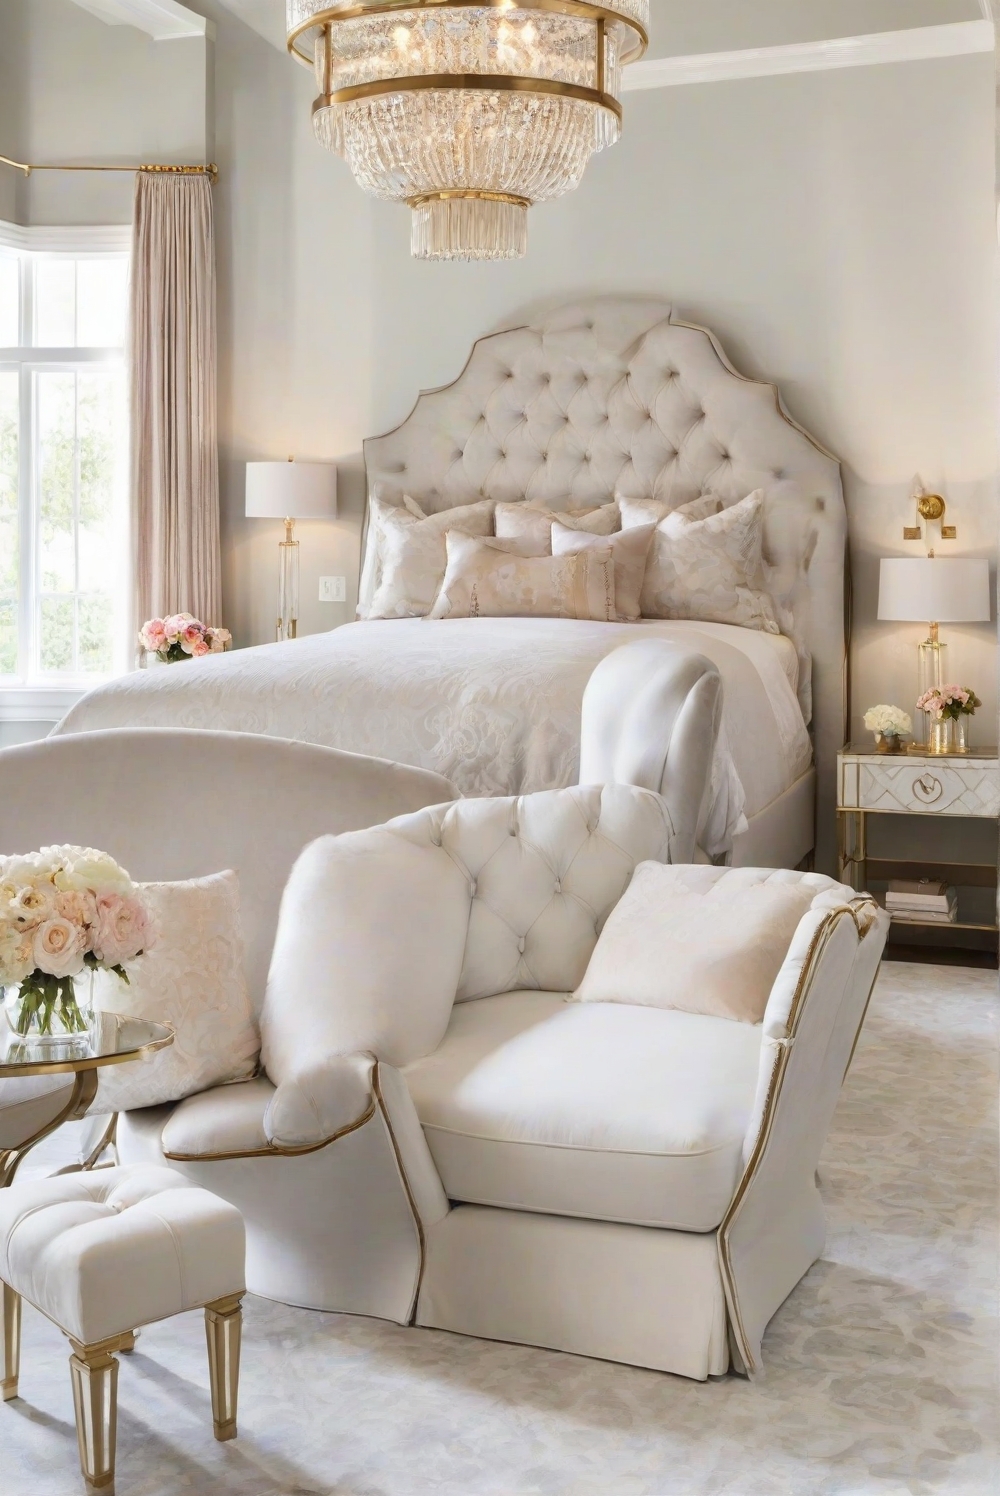 bedroom furniture, bedroom design, bedroom decor, bedroom seating, elegant furniture, luxury seating, comfortable seating